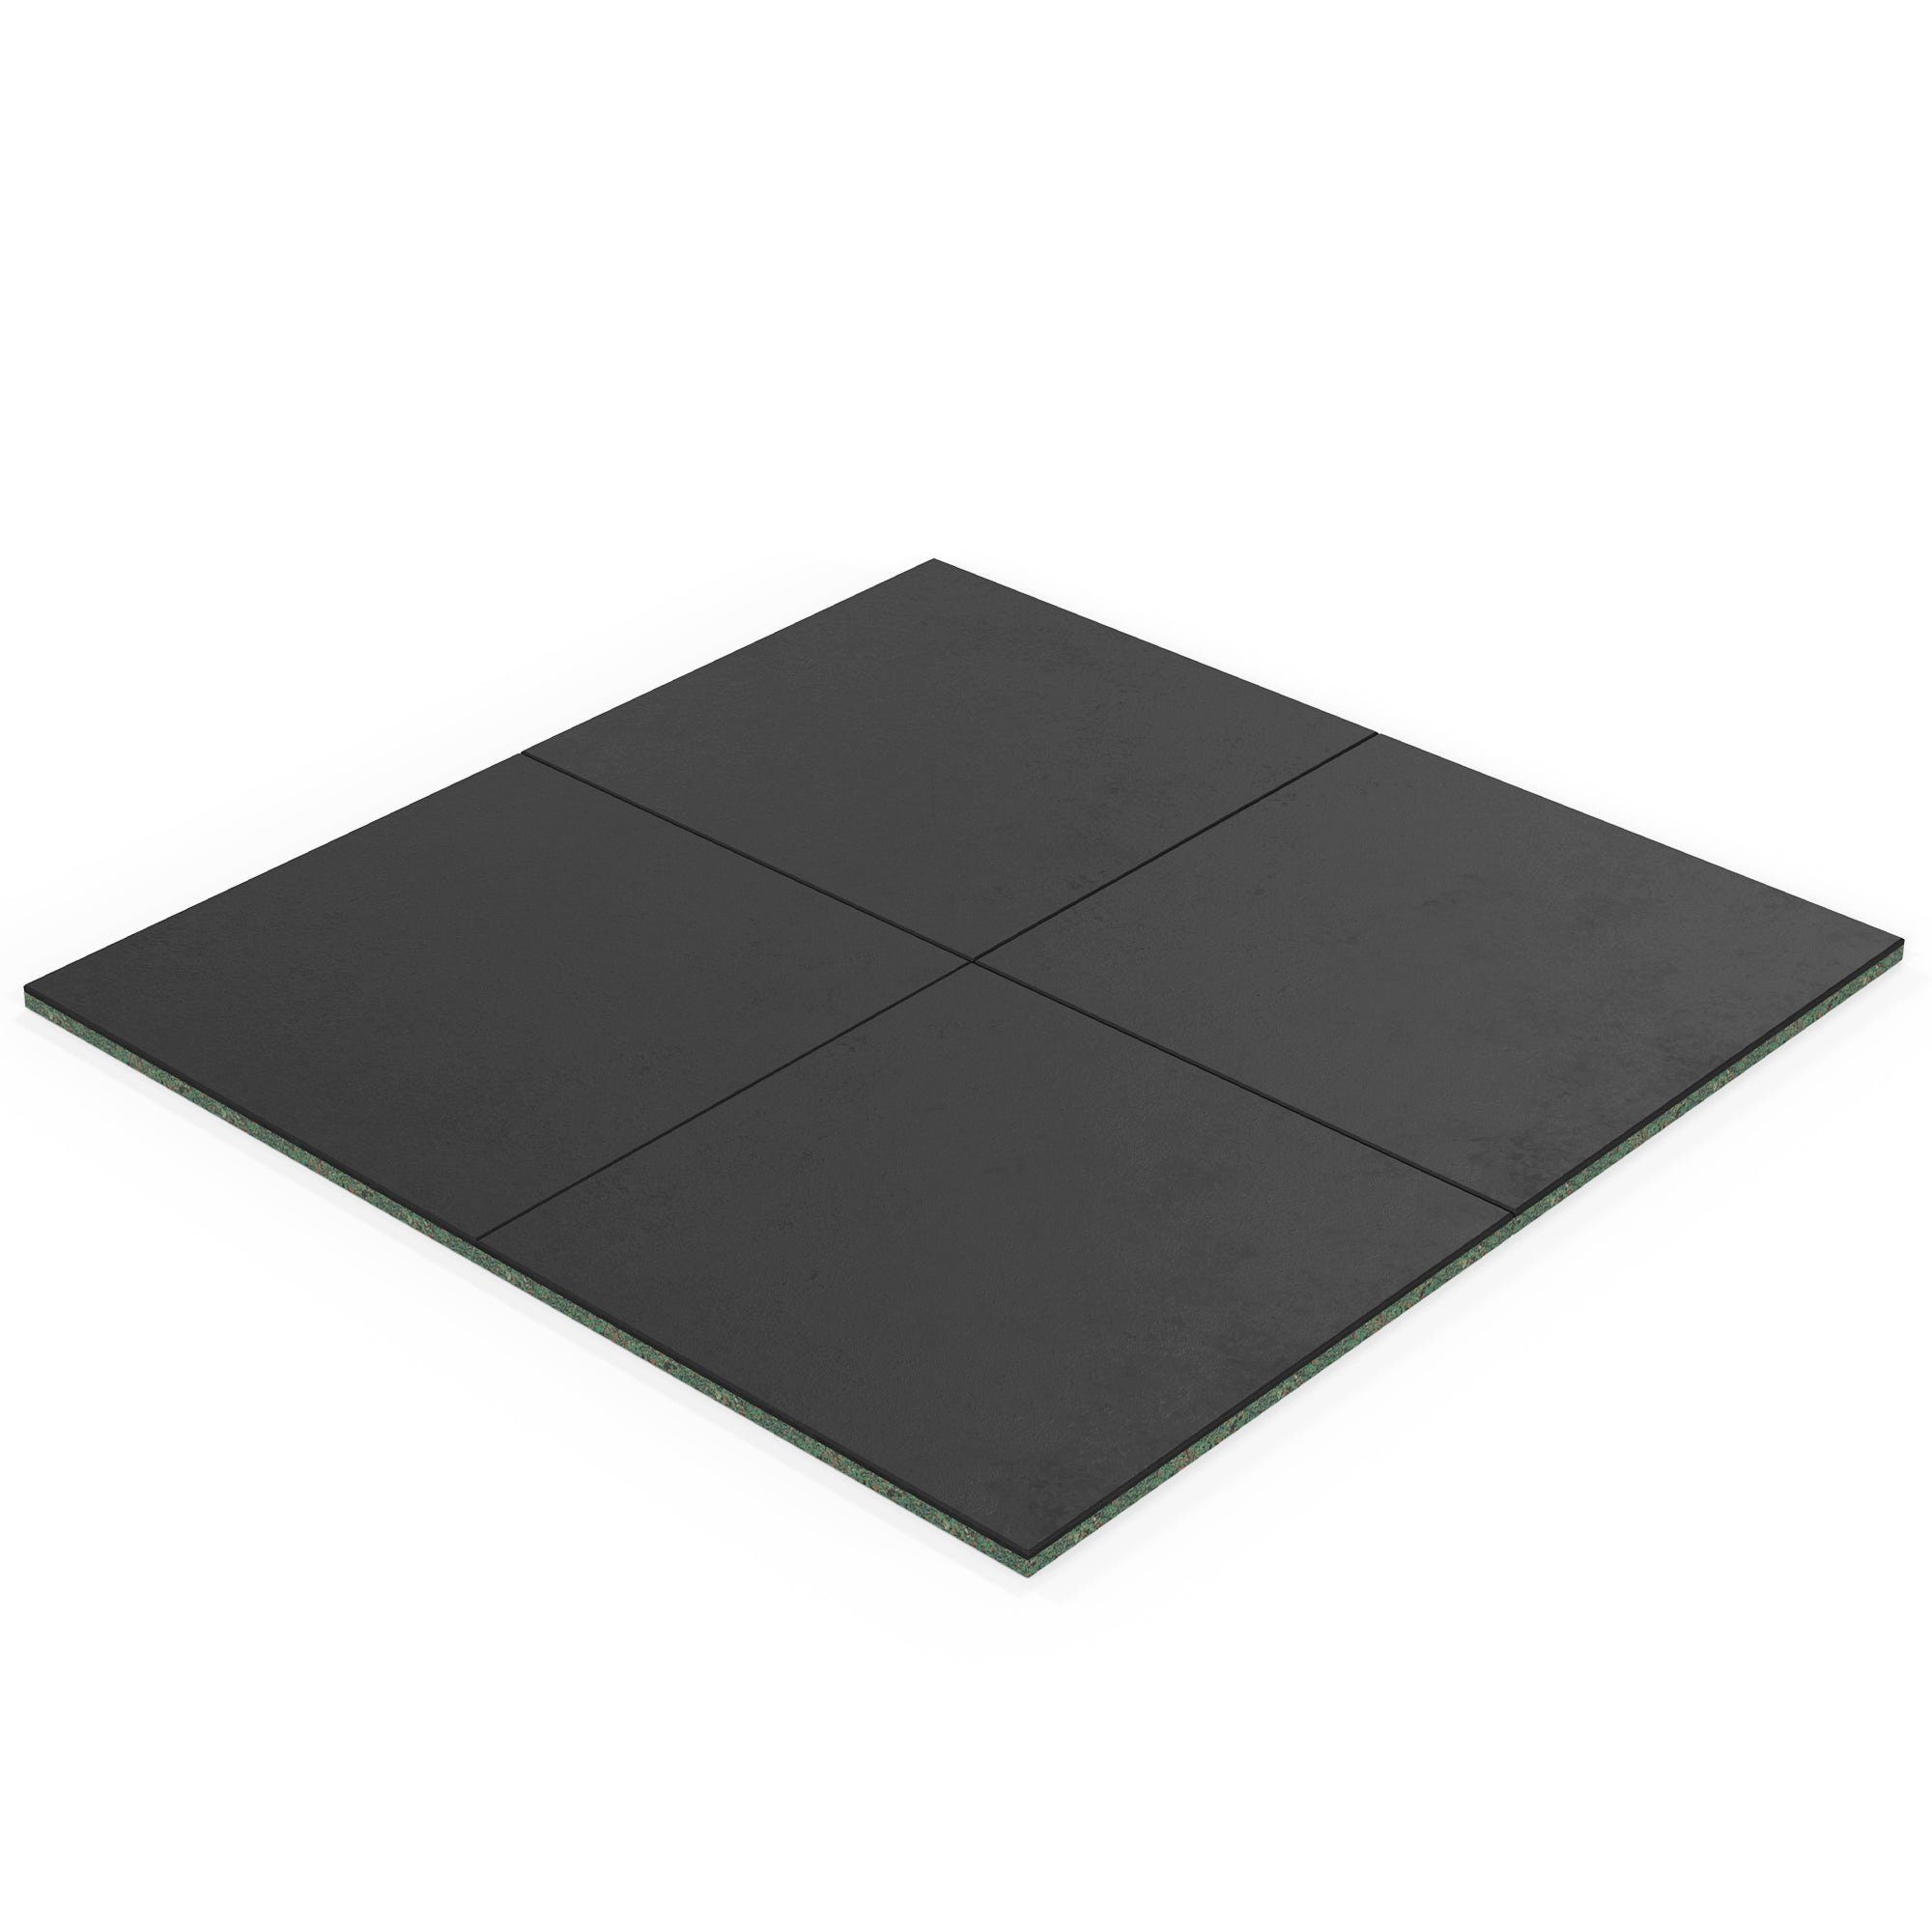 ATLETICA Bodenmatte 6m2 SolidProtect Bodenschutzmatten 20 mm, Keltan EPDM Material